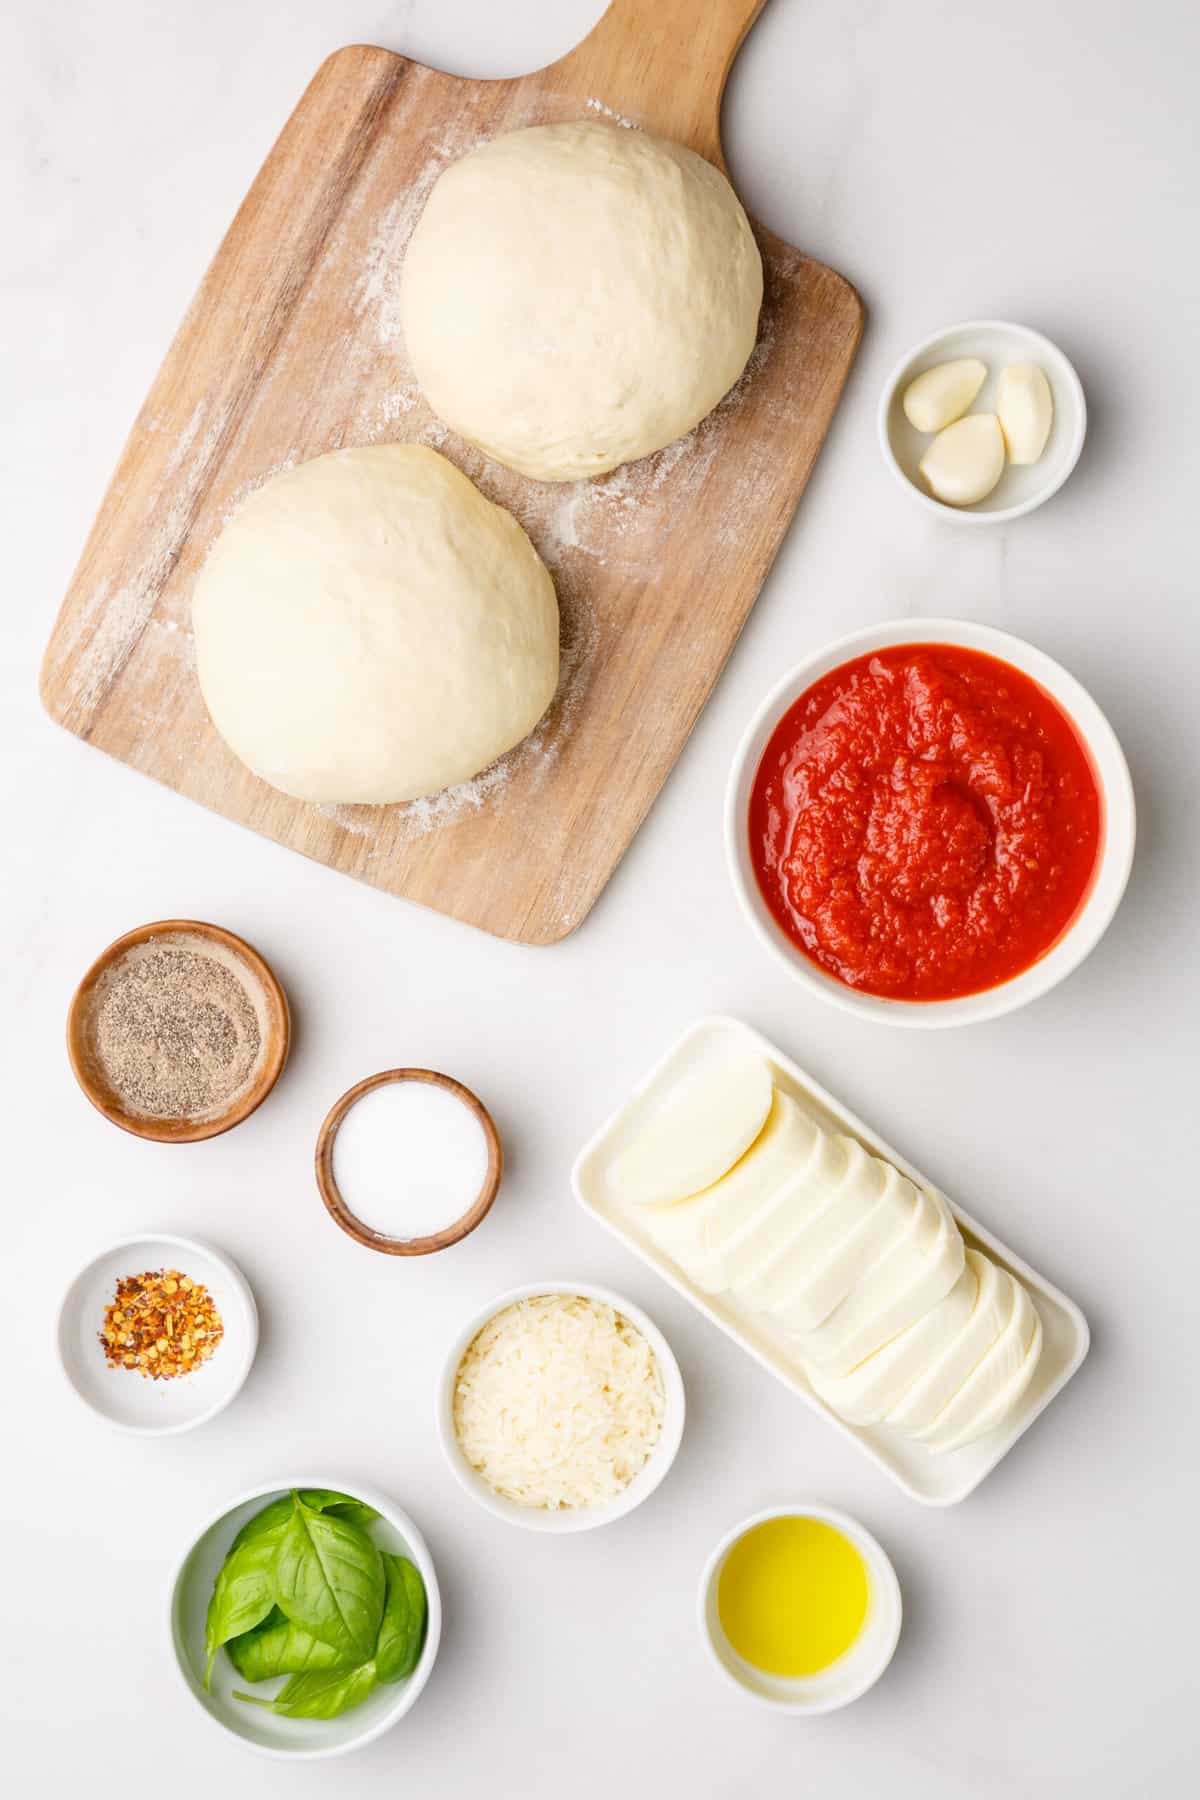 ingredients to make margherita pizza